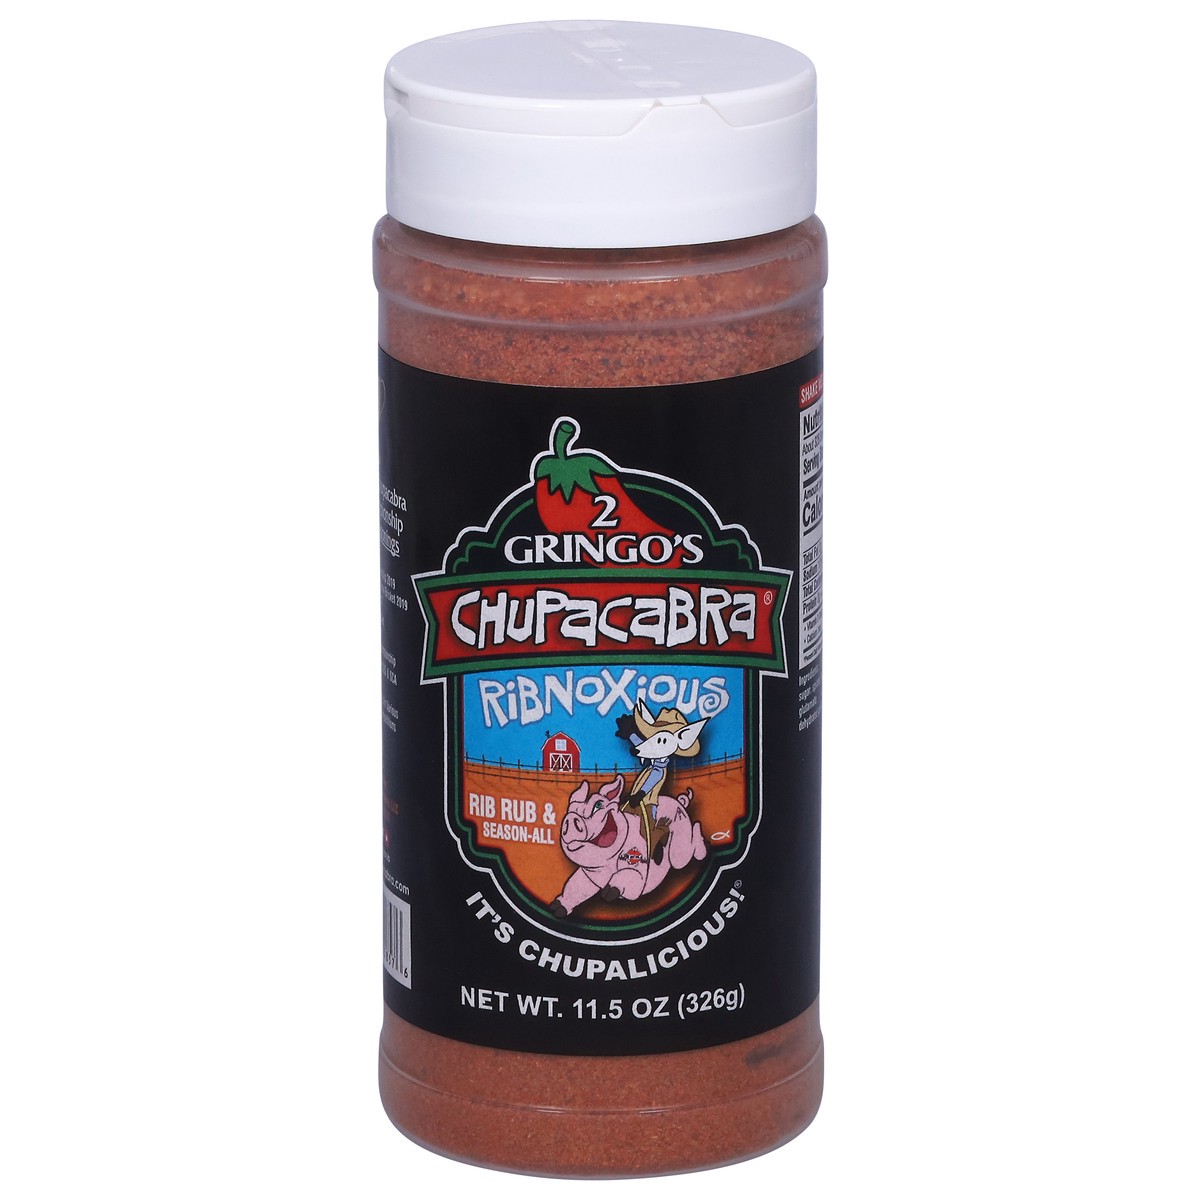 slide 6 of 13, 2 Gringo's Chupacabra Ribnoxious Seasoning 11.5 oz, 11.5 oz